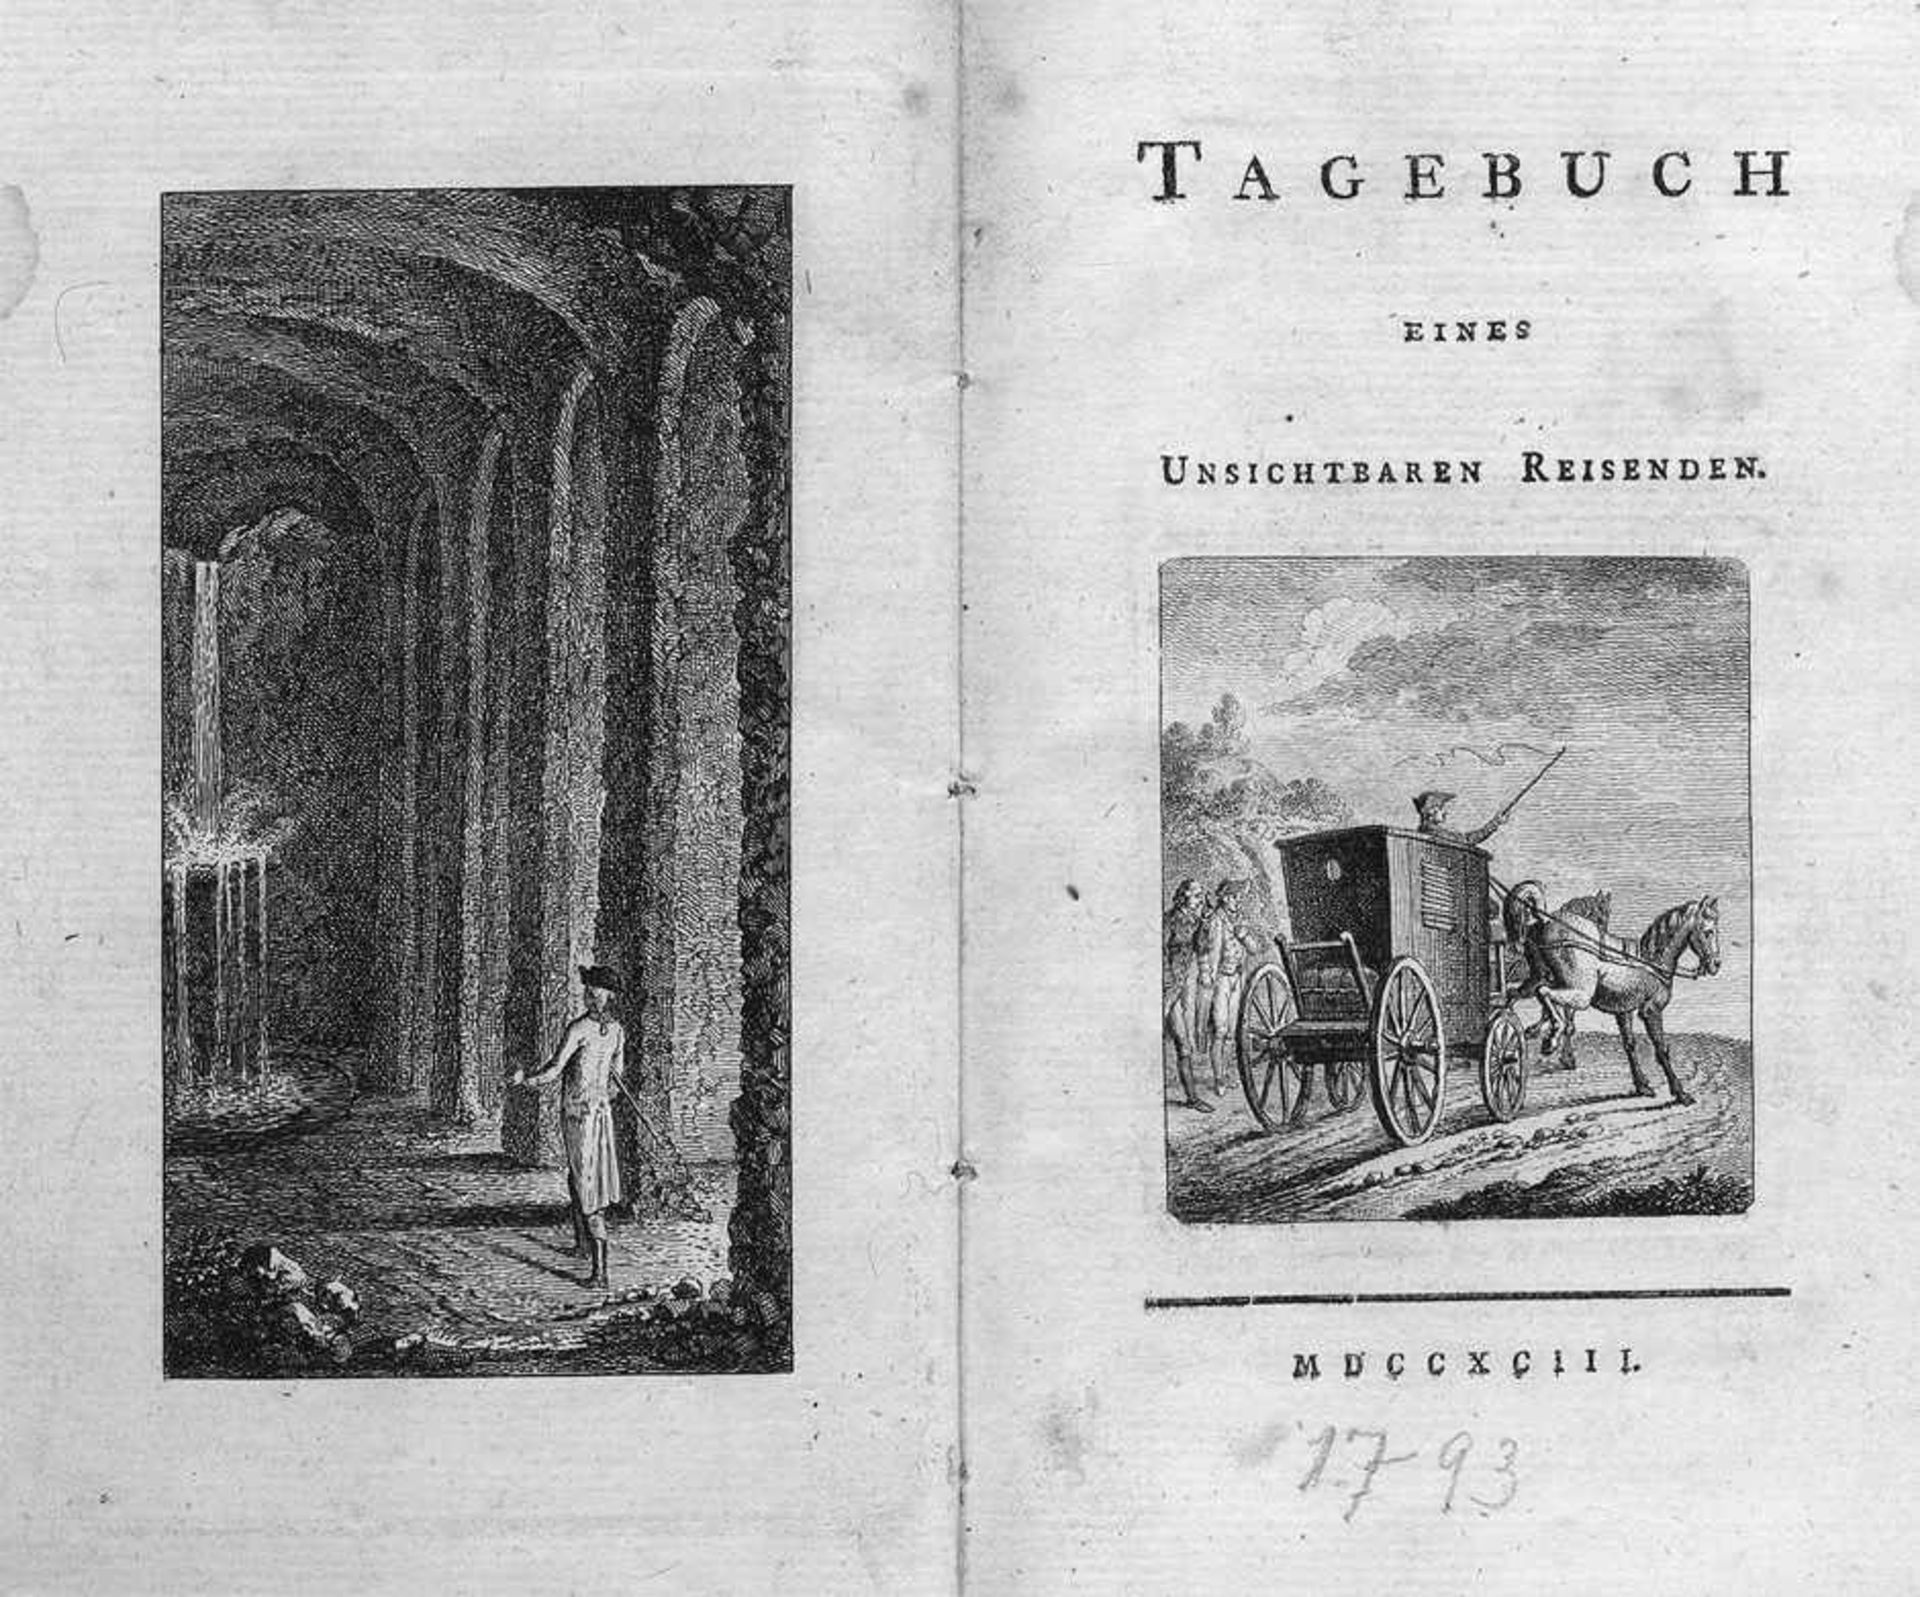 Heidegger, Heinrich: Tagebuch eines unsichtbaren Reisenden(Heidegger, Heinrich). Tagebuch eines